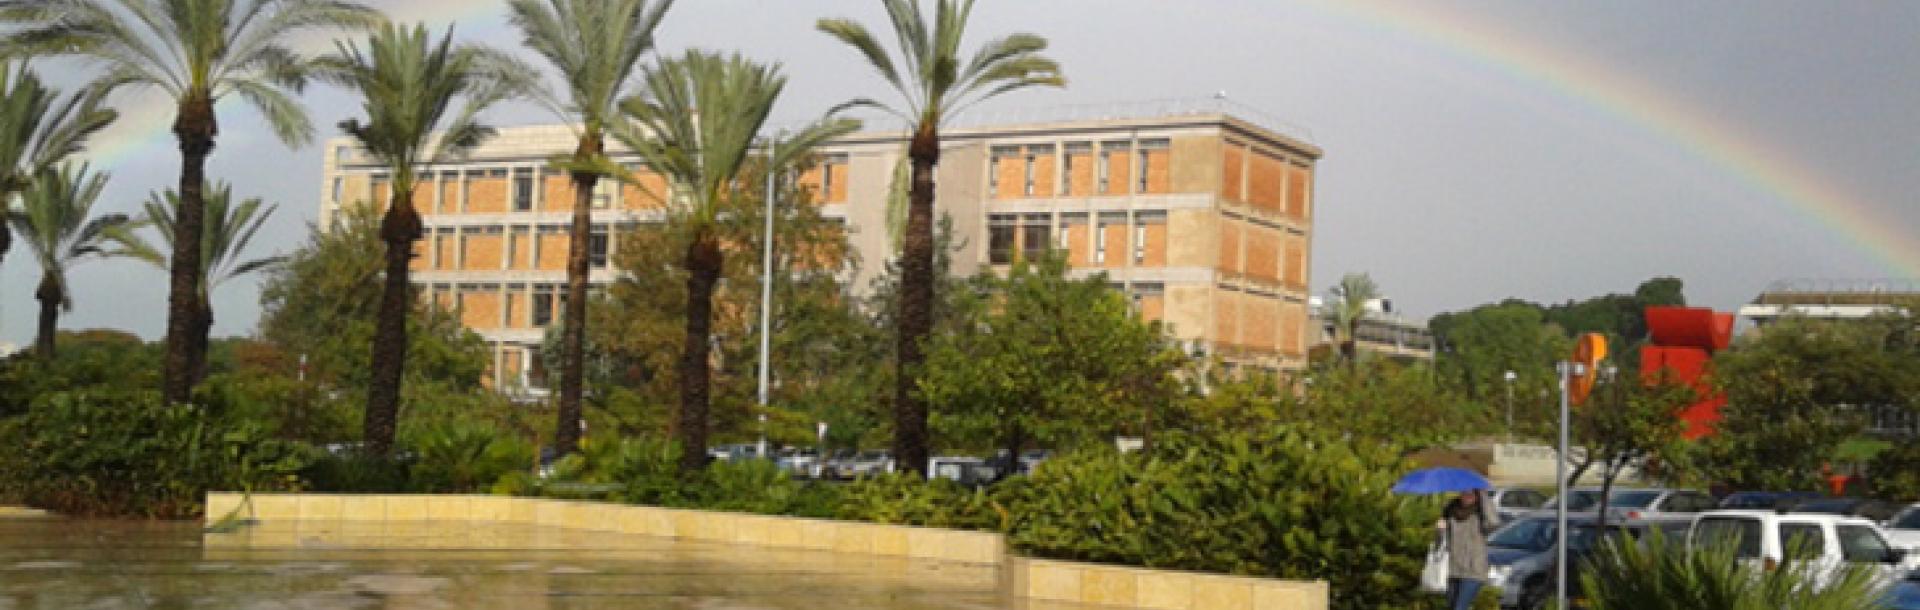 מרכז צבי מיתר ,הפקולטה למשפטים אוניברסיטה תל אביב